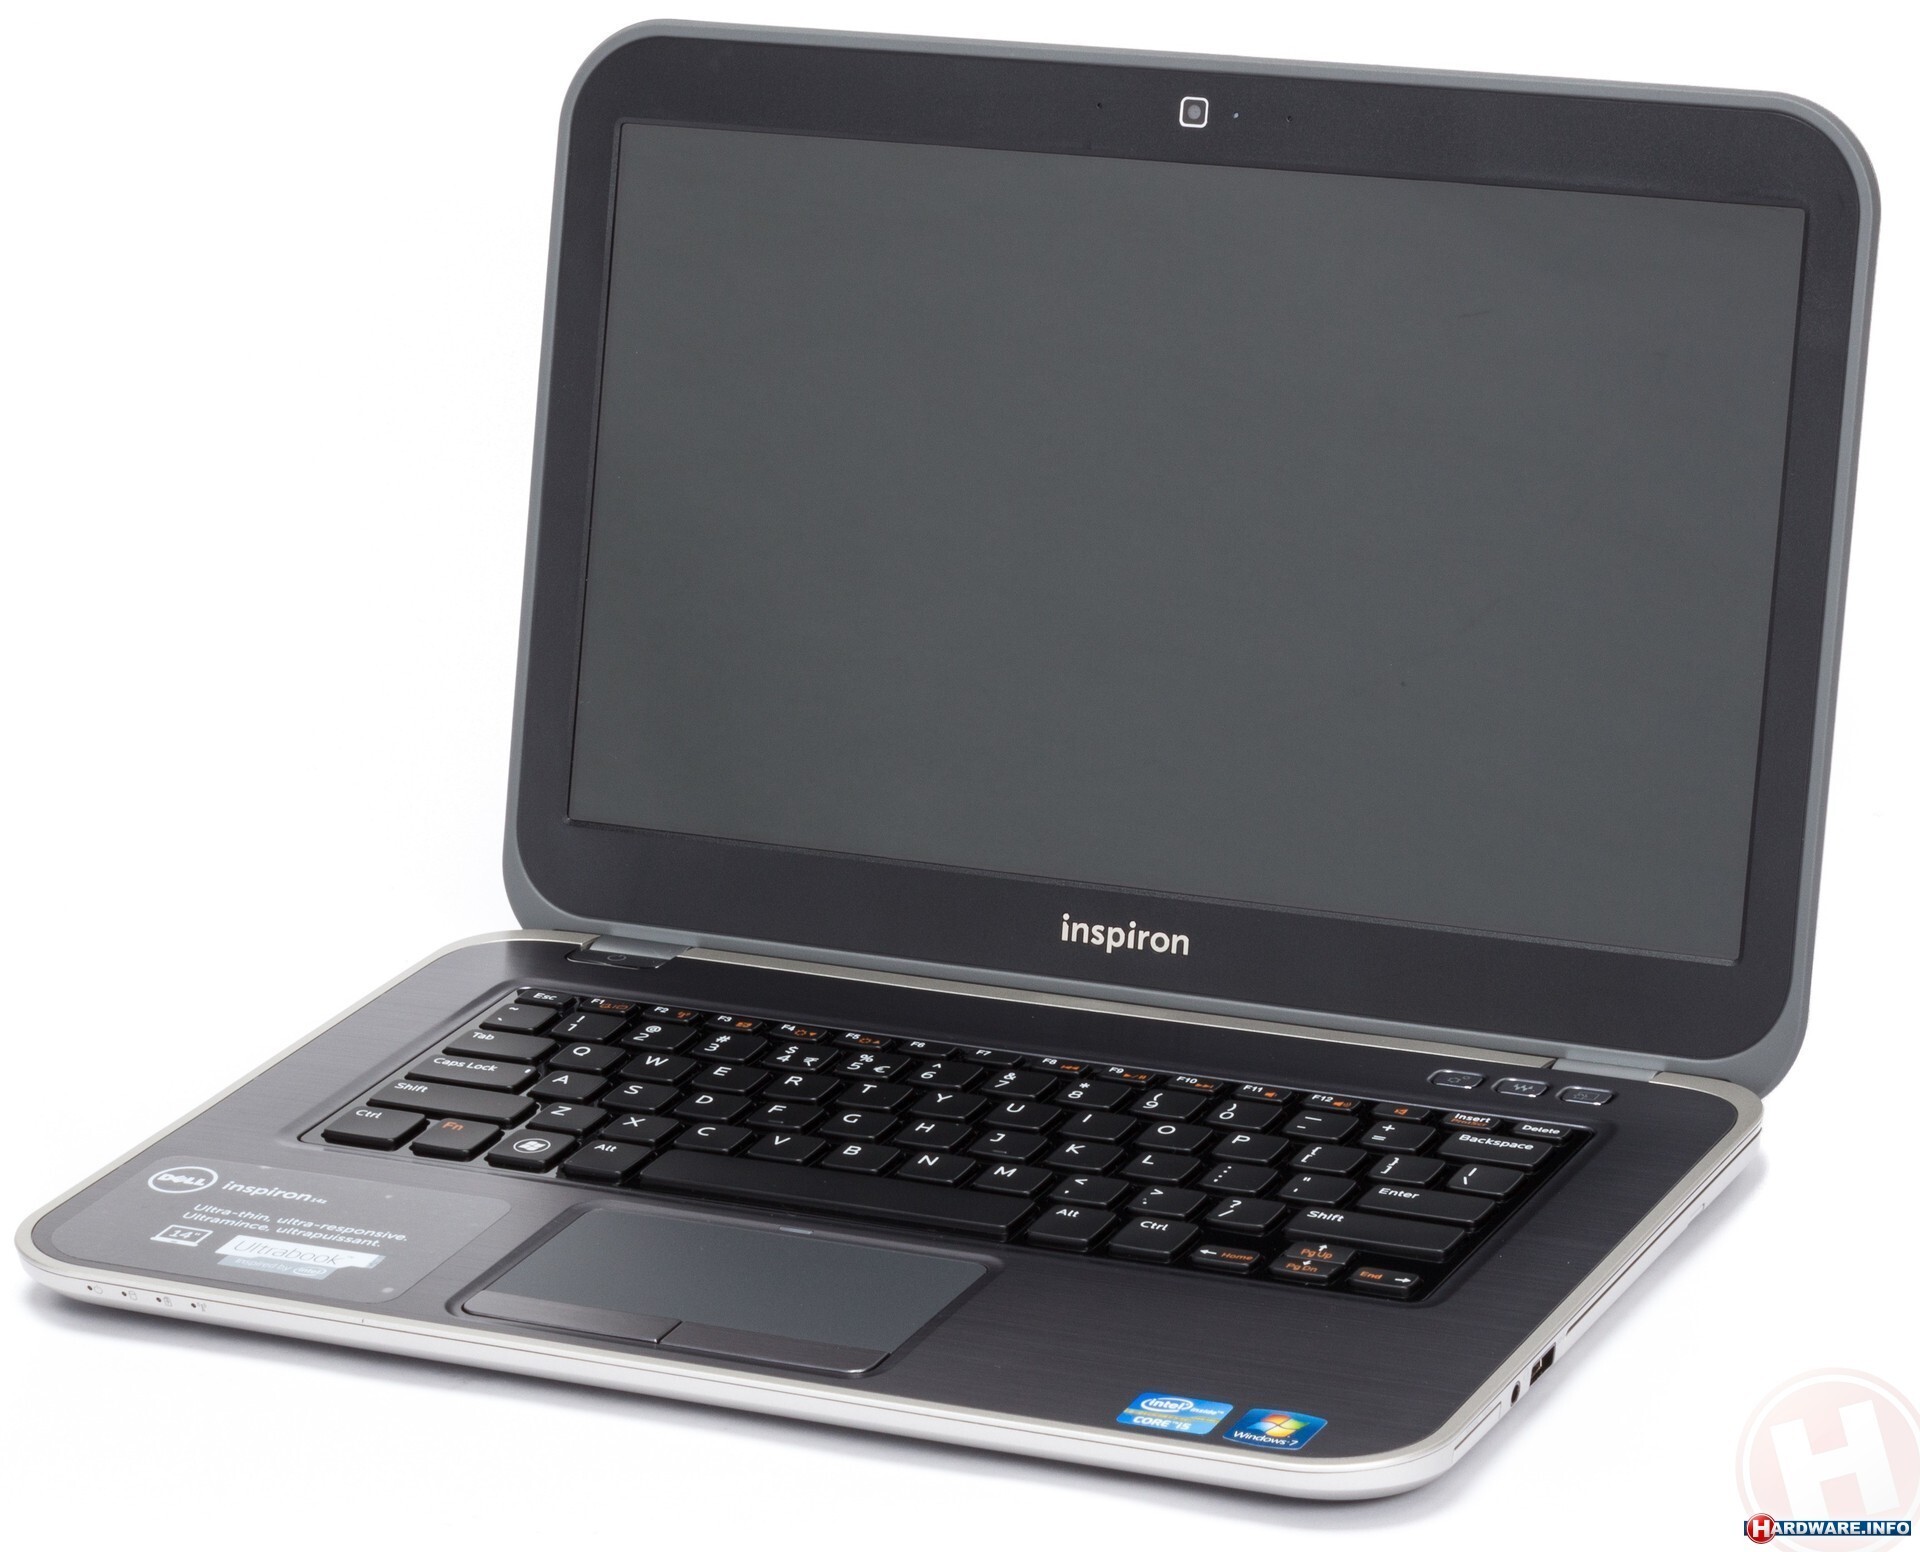 Laptop Dell Inspiron 14z-5423 (YMRY27) - Intel Core i3-3227U 1.8GHz, 4GB RAM, 500GB HDD, VGA Intel HD Graphics 4000, 14 inch